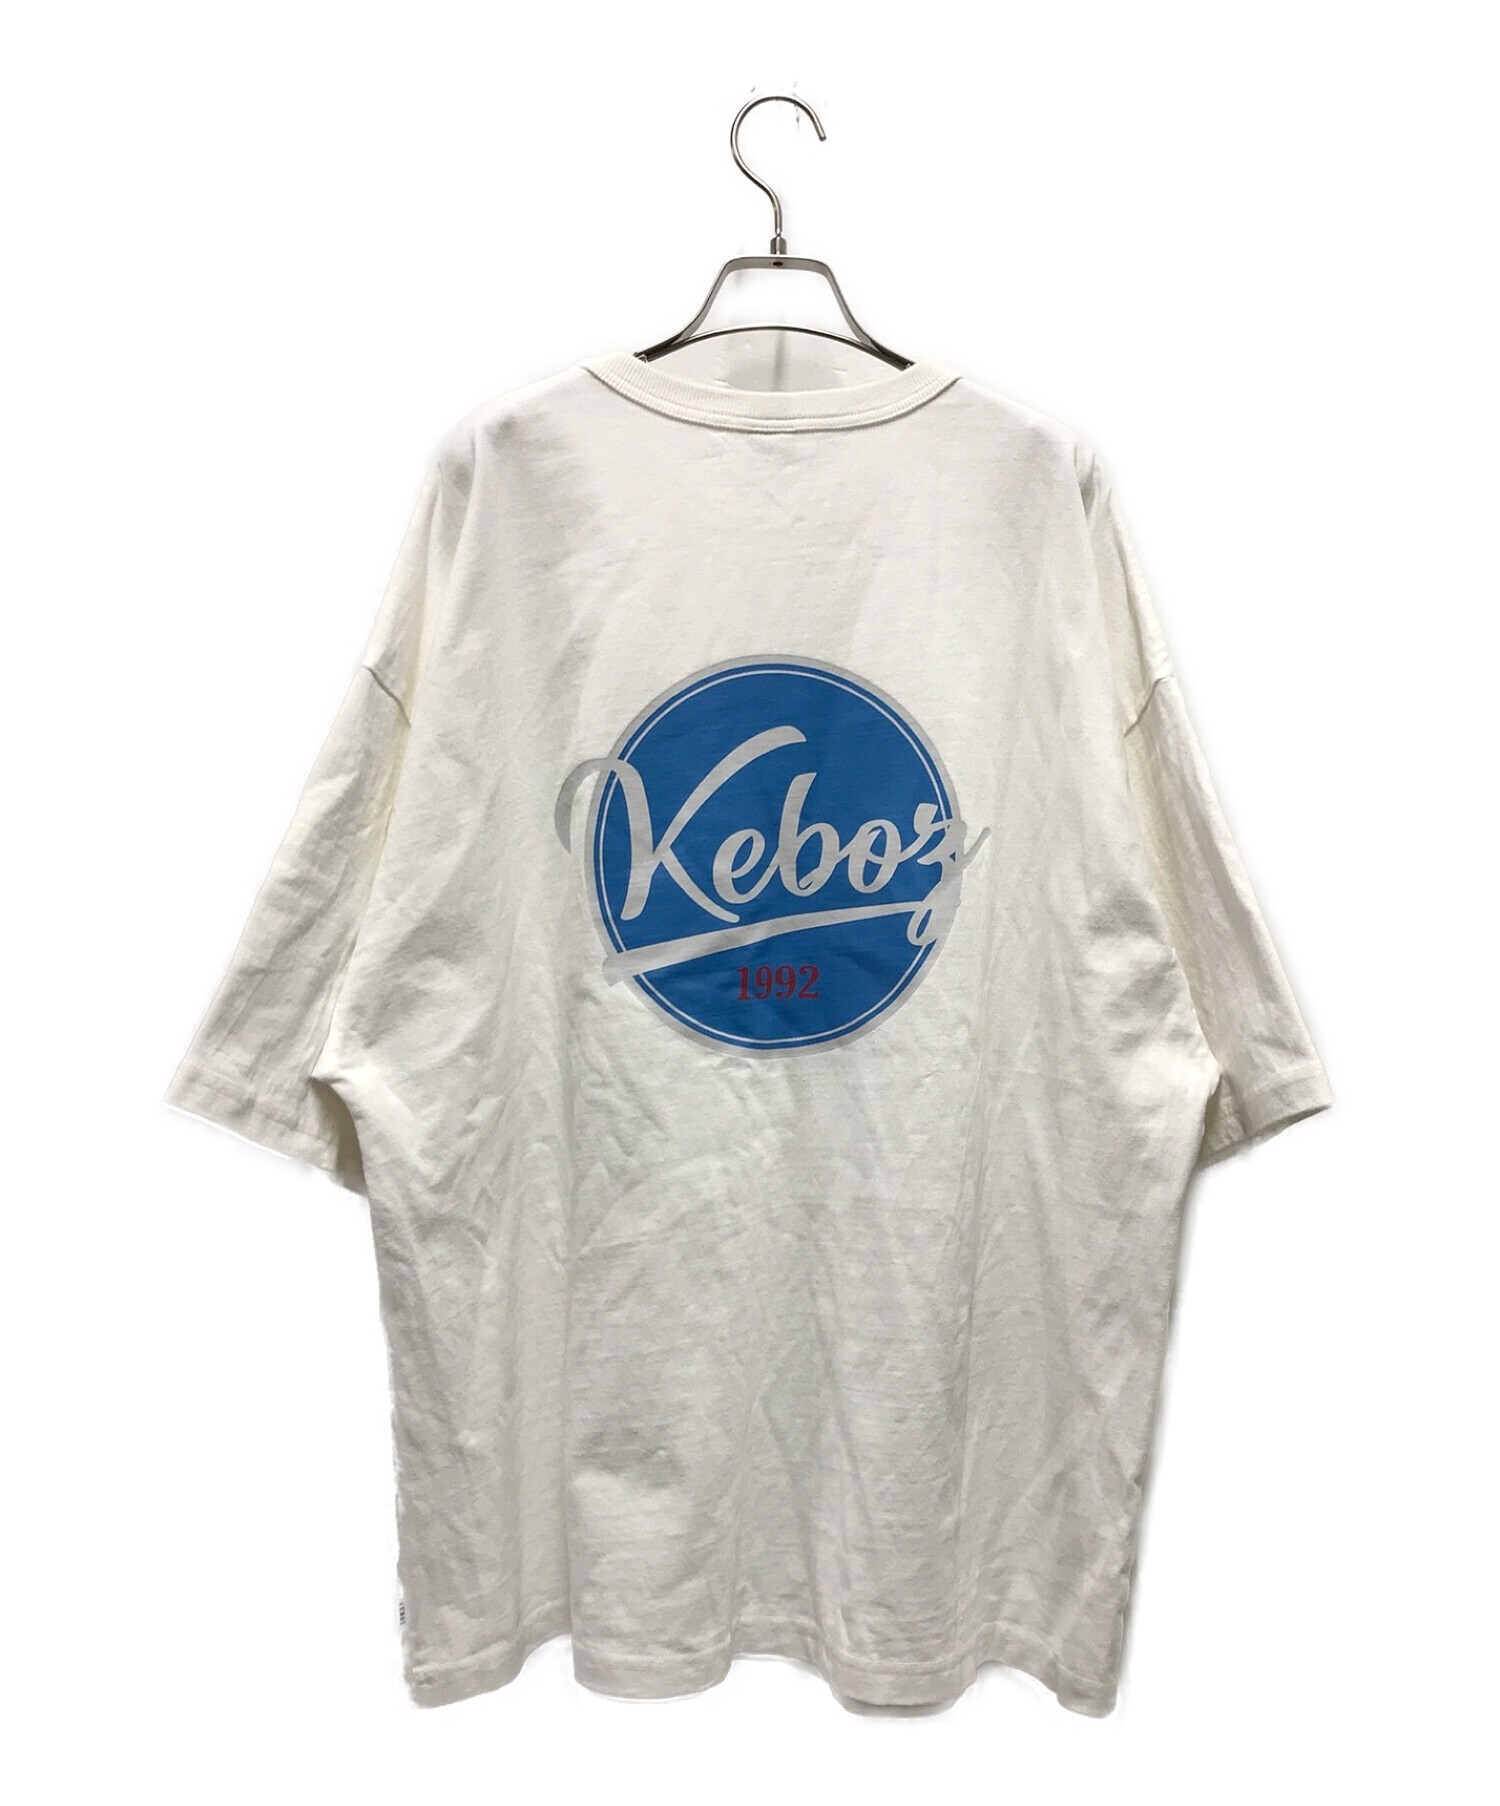 Keboz（ケボズ）ティシャツ - Tシャツ